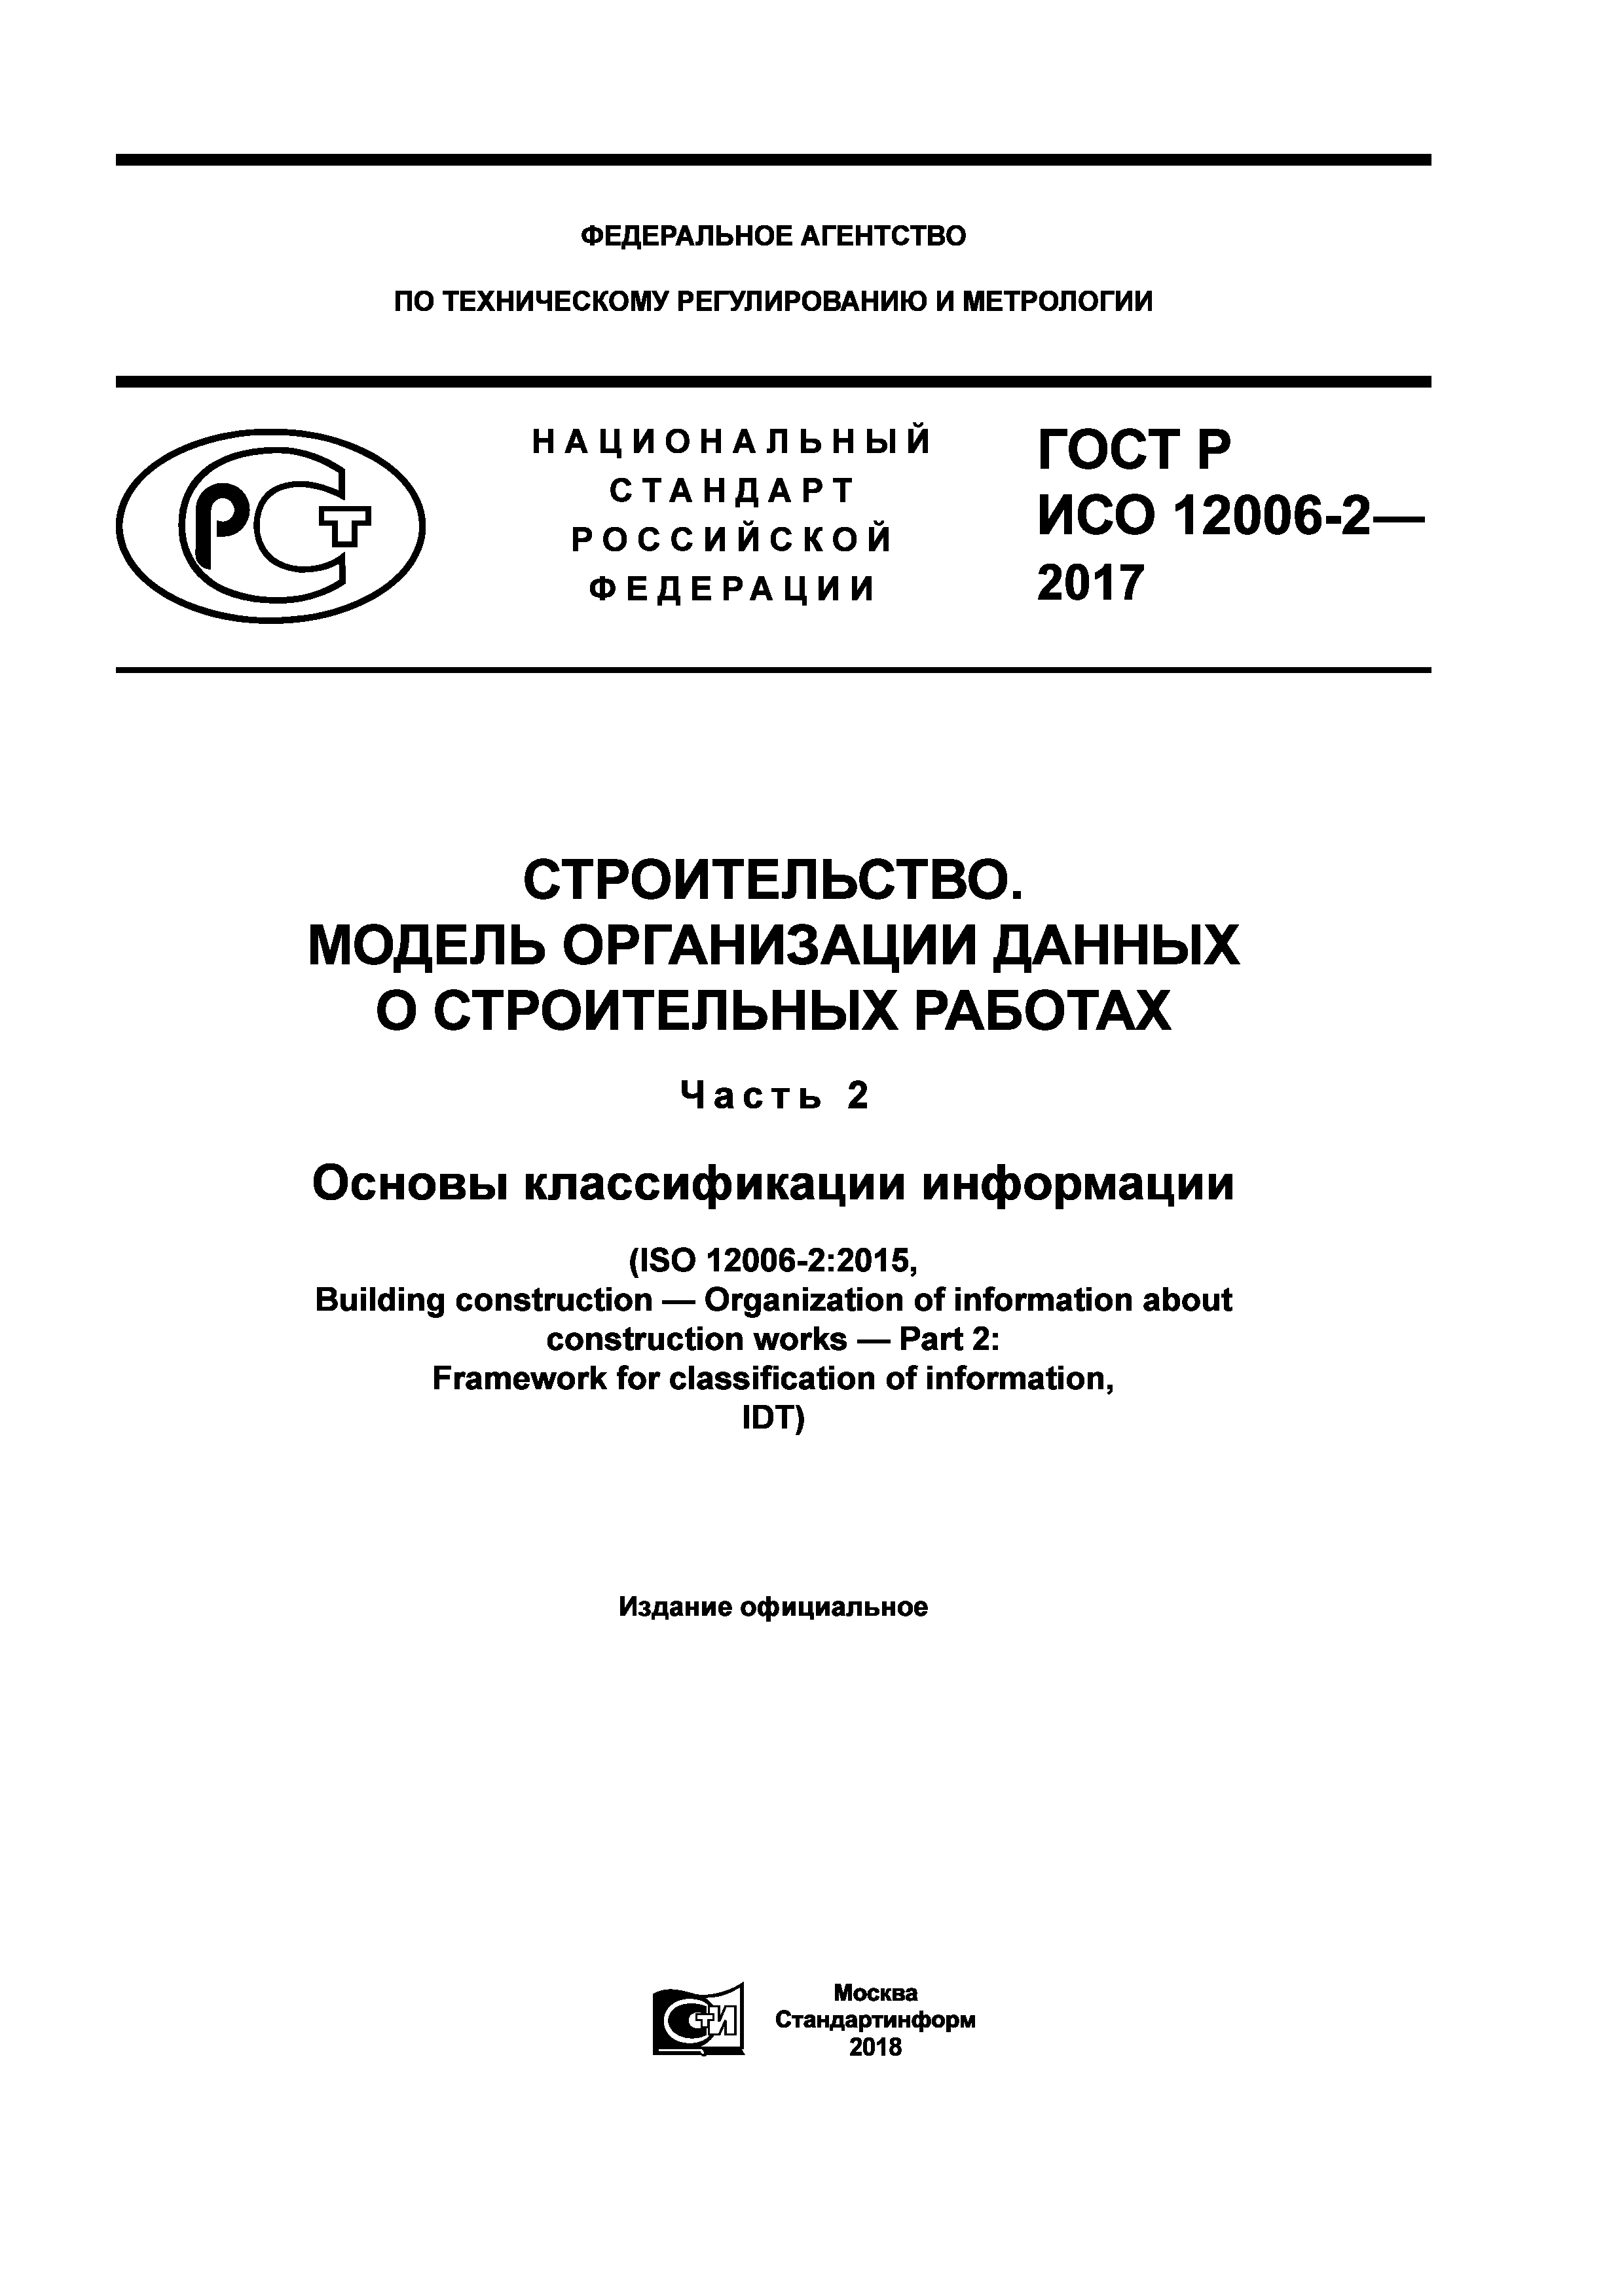 ГОСТ Р ИСО 12006-2-2017